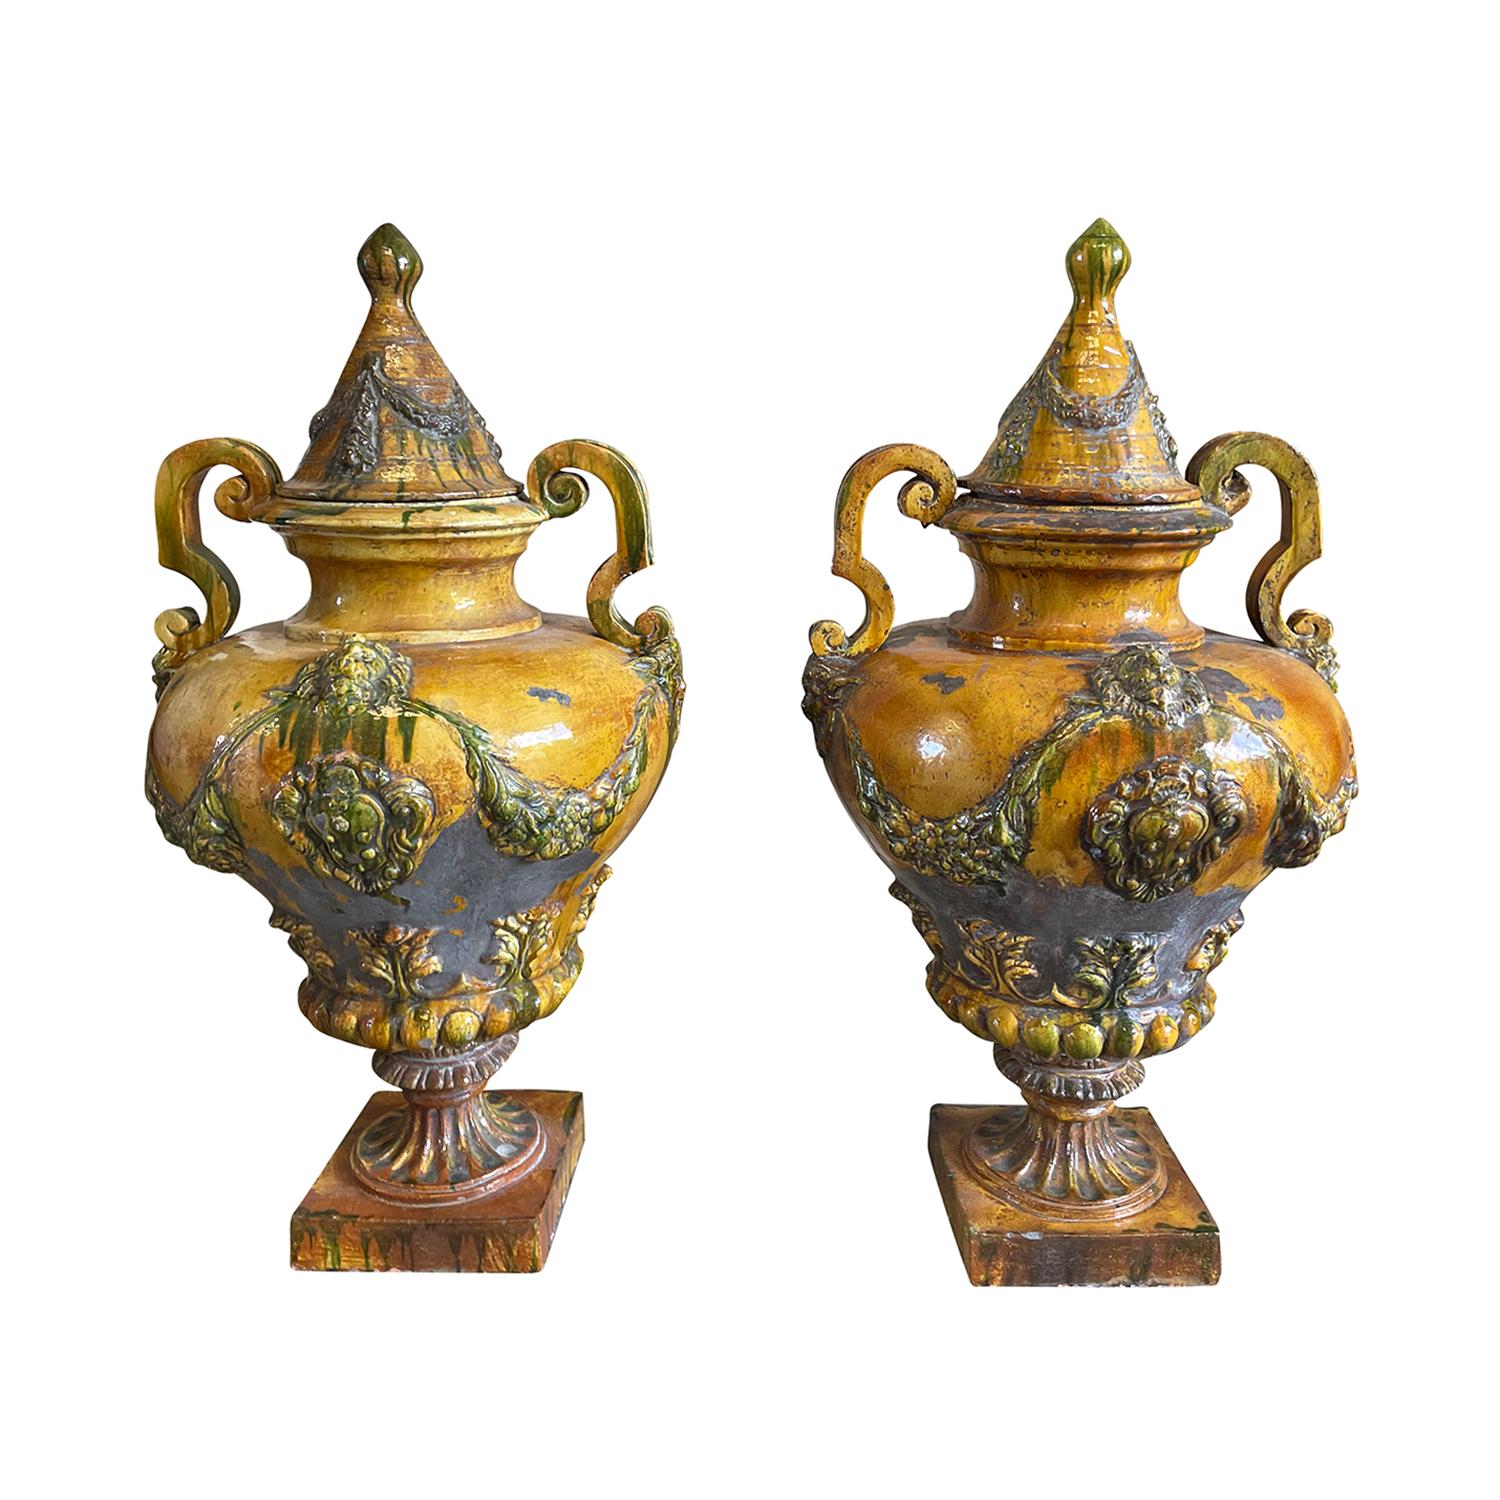 Paire d'urnes balustres italiennes anciennes à double anse, en céramique émaillée dans le style du XVIIIe siècle, avec une glaçure jaune miel aux accents verts, en bon état. Ces ornements de jardin décoratifs sont montés sur une base carrée. Usure